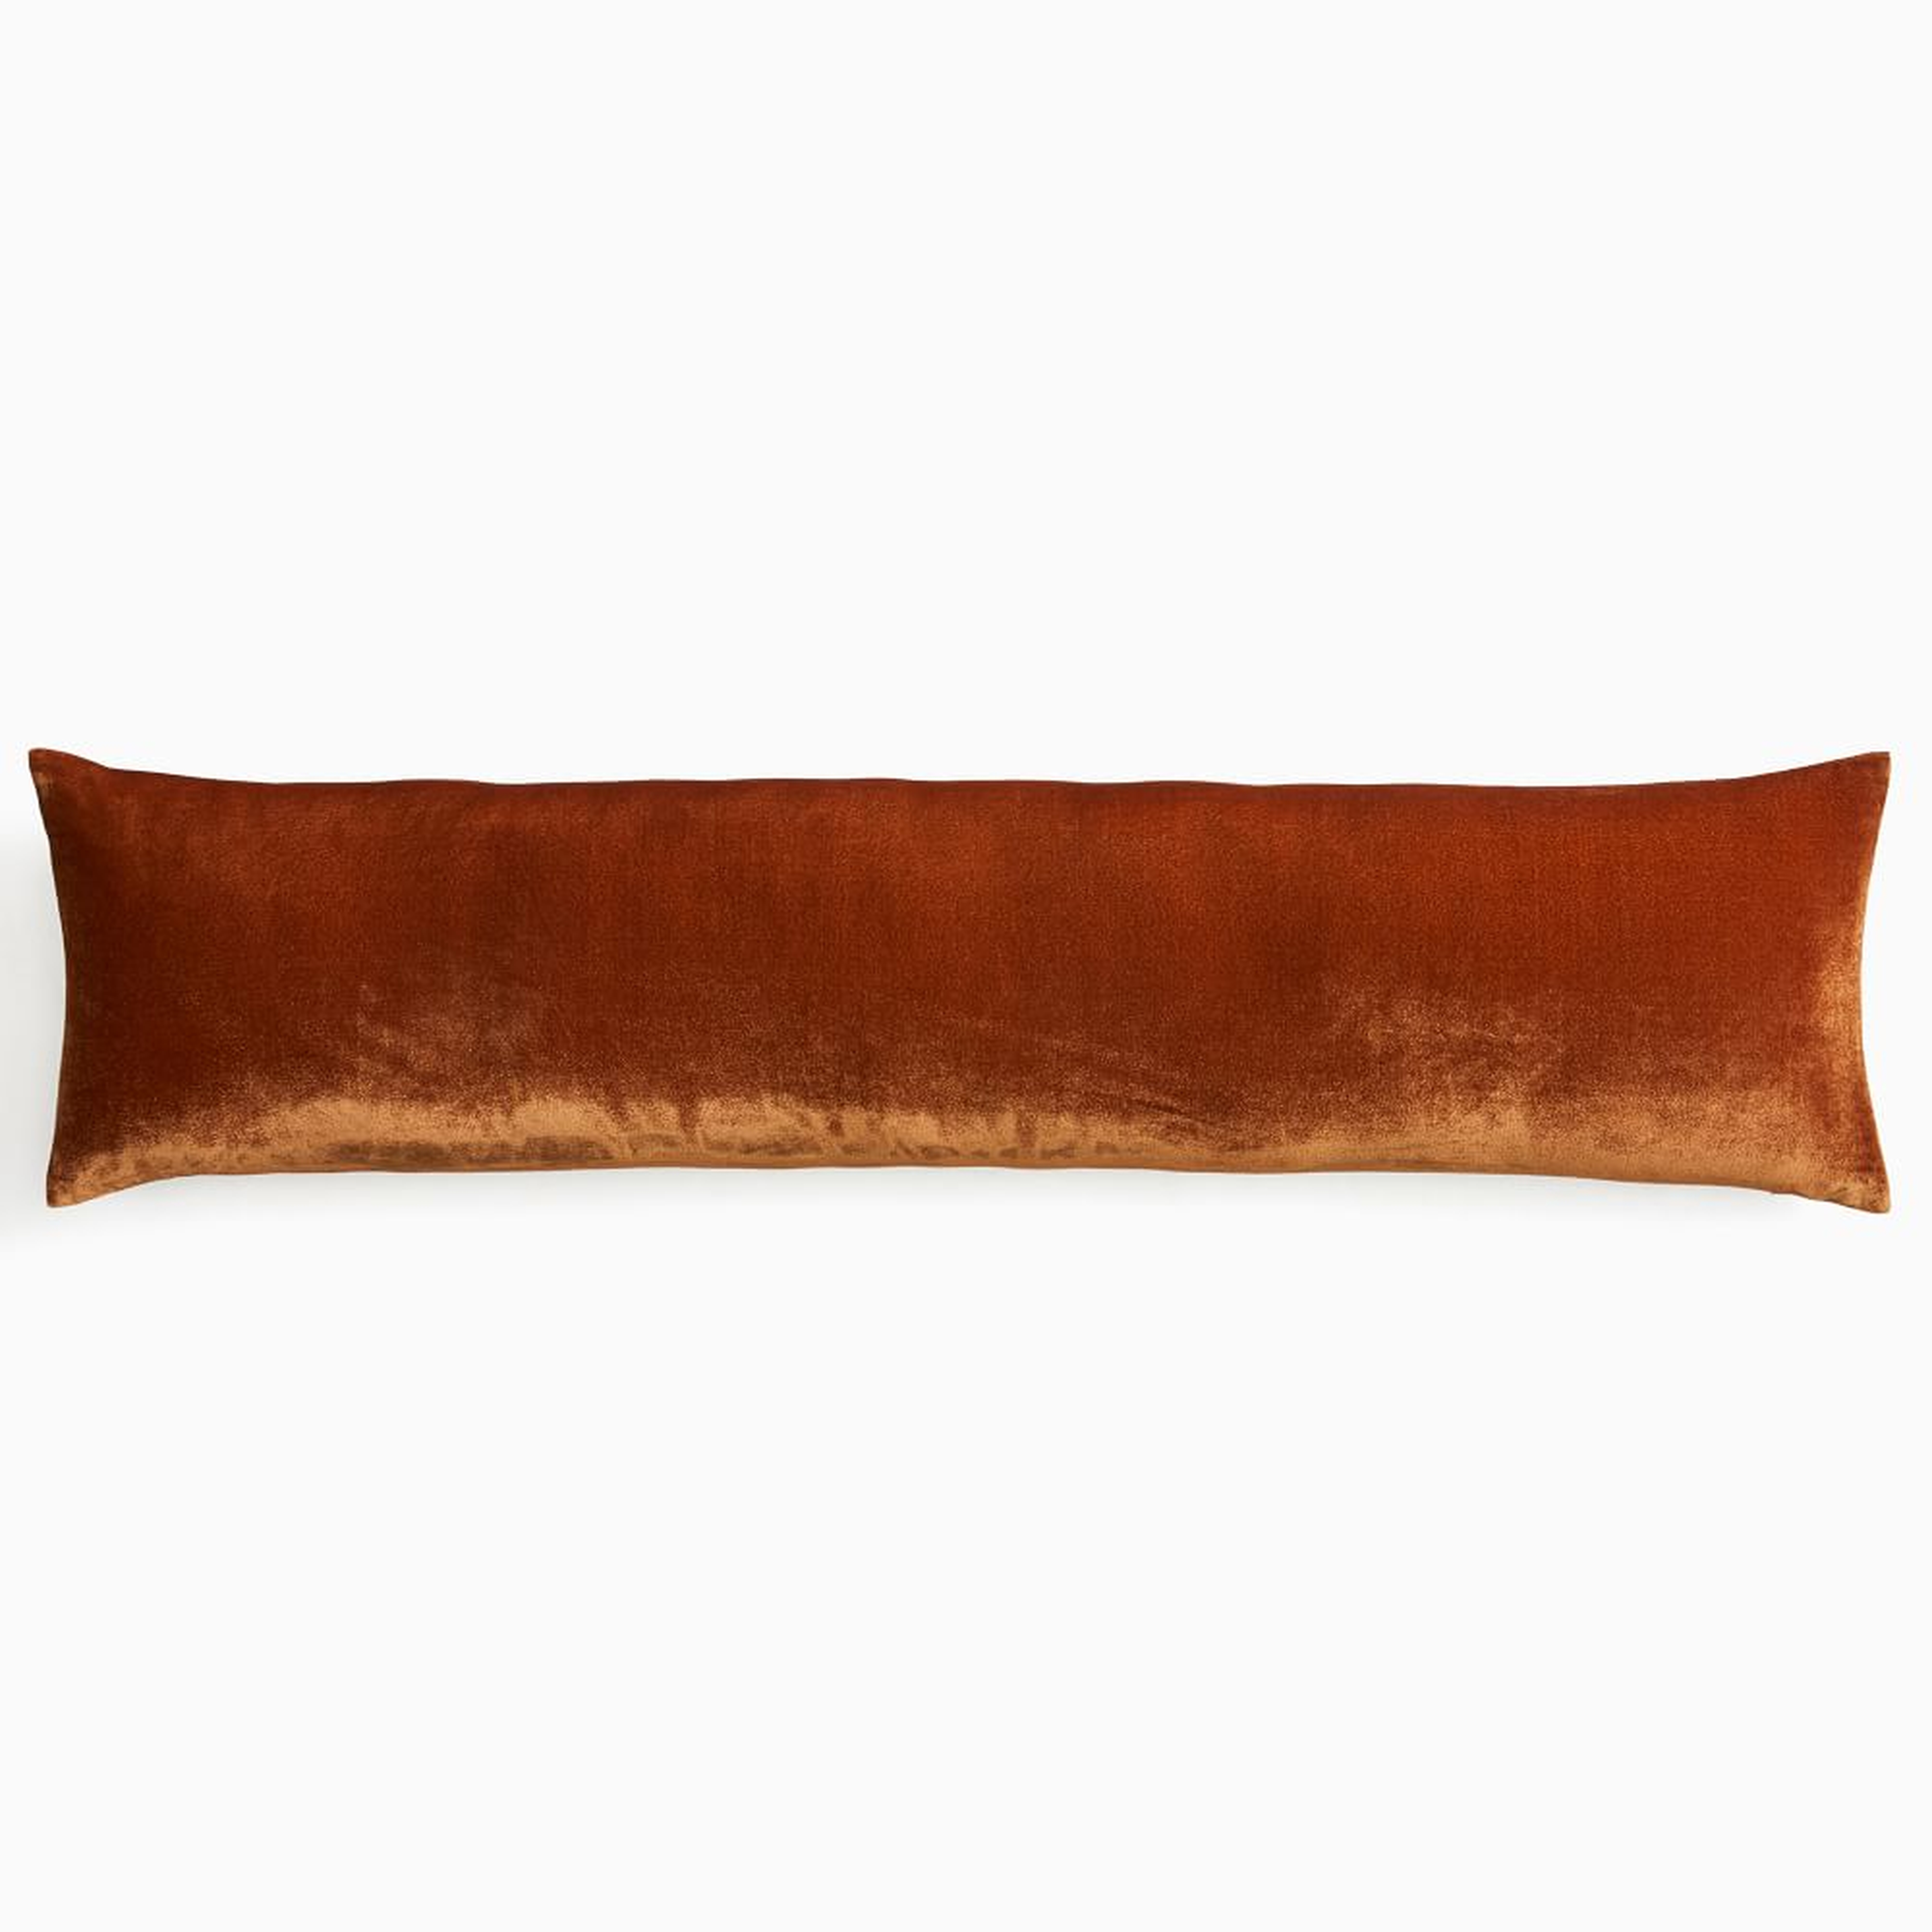 Lush Velvet Pillow Cover, 12"x46", Copper - West Elm